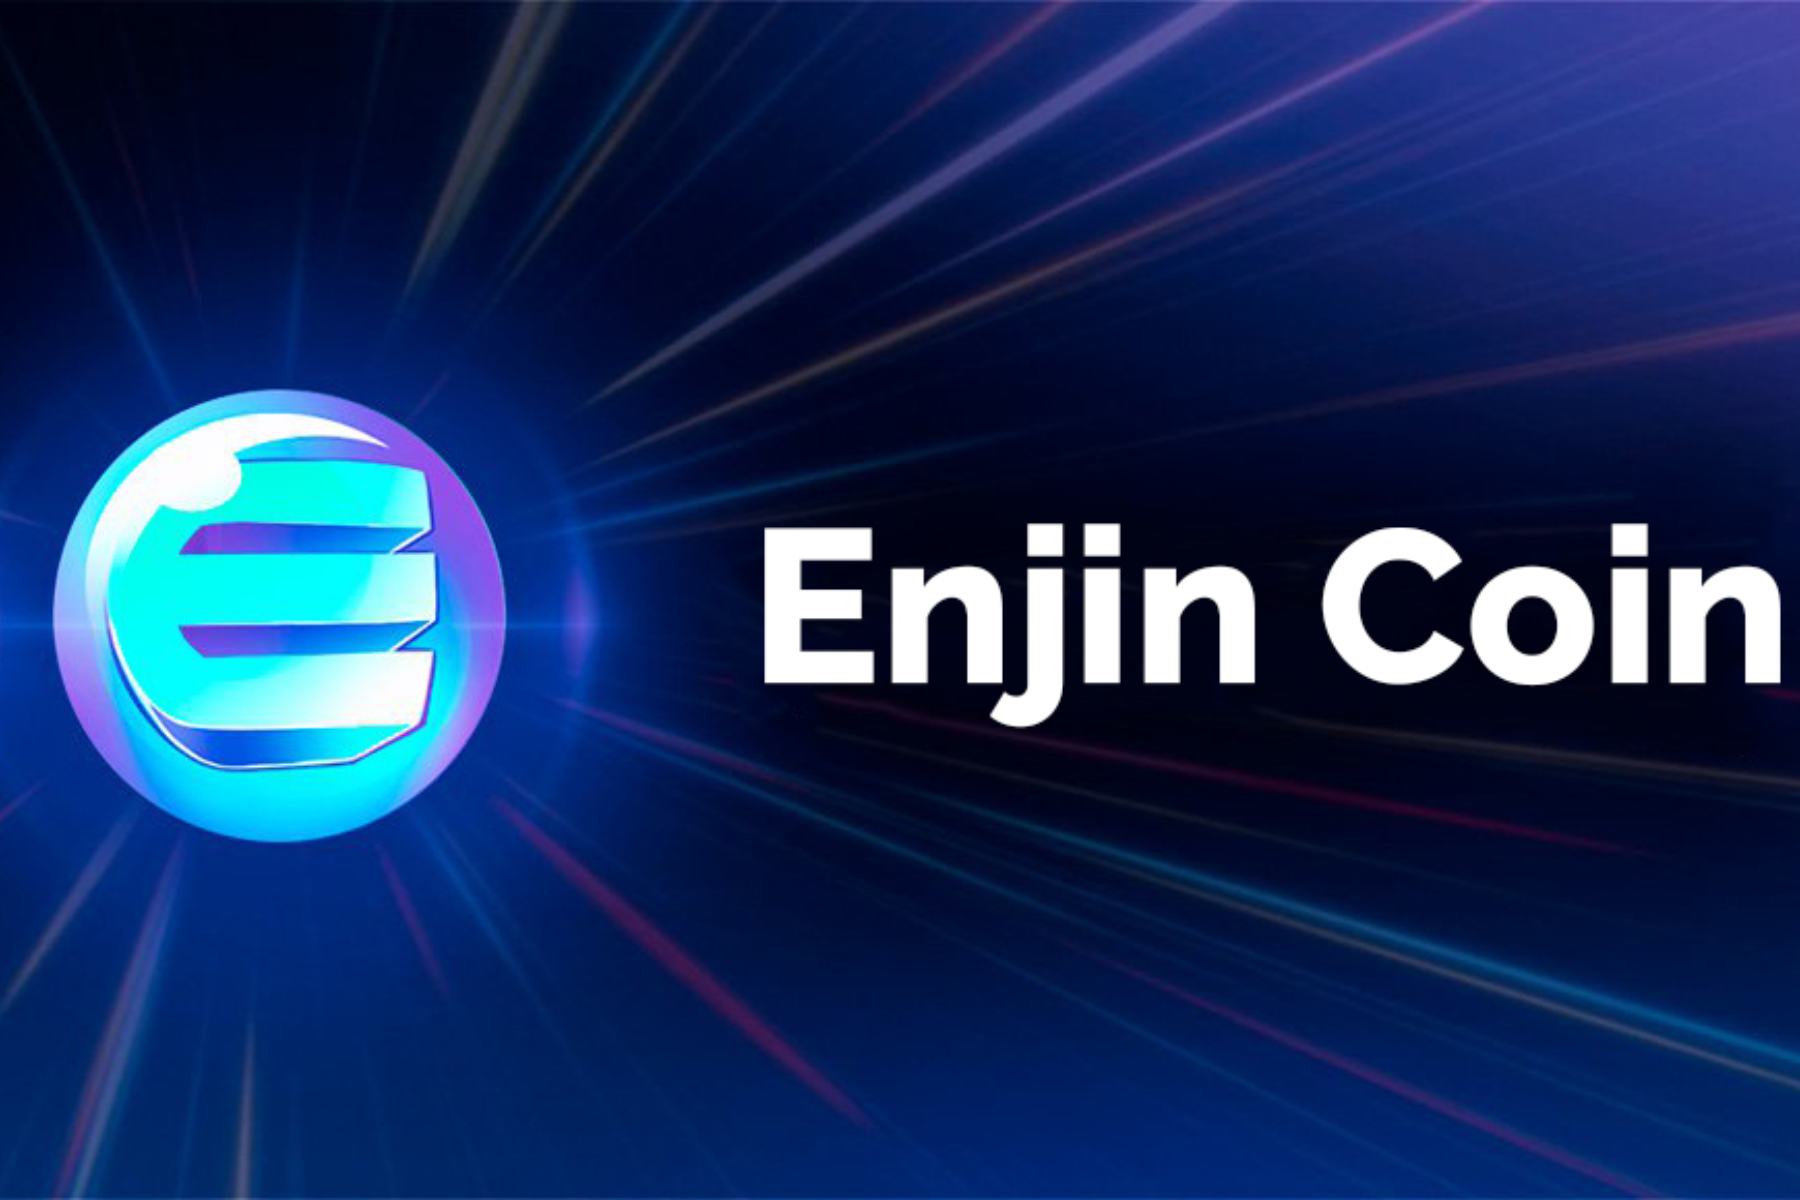 The logo of Enjin Coin (ENJ)